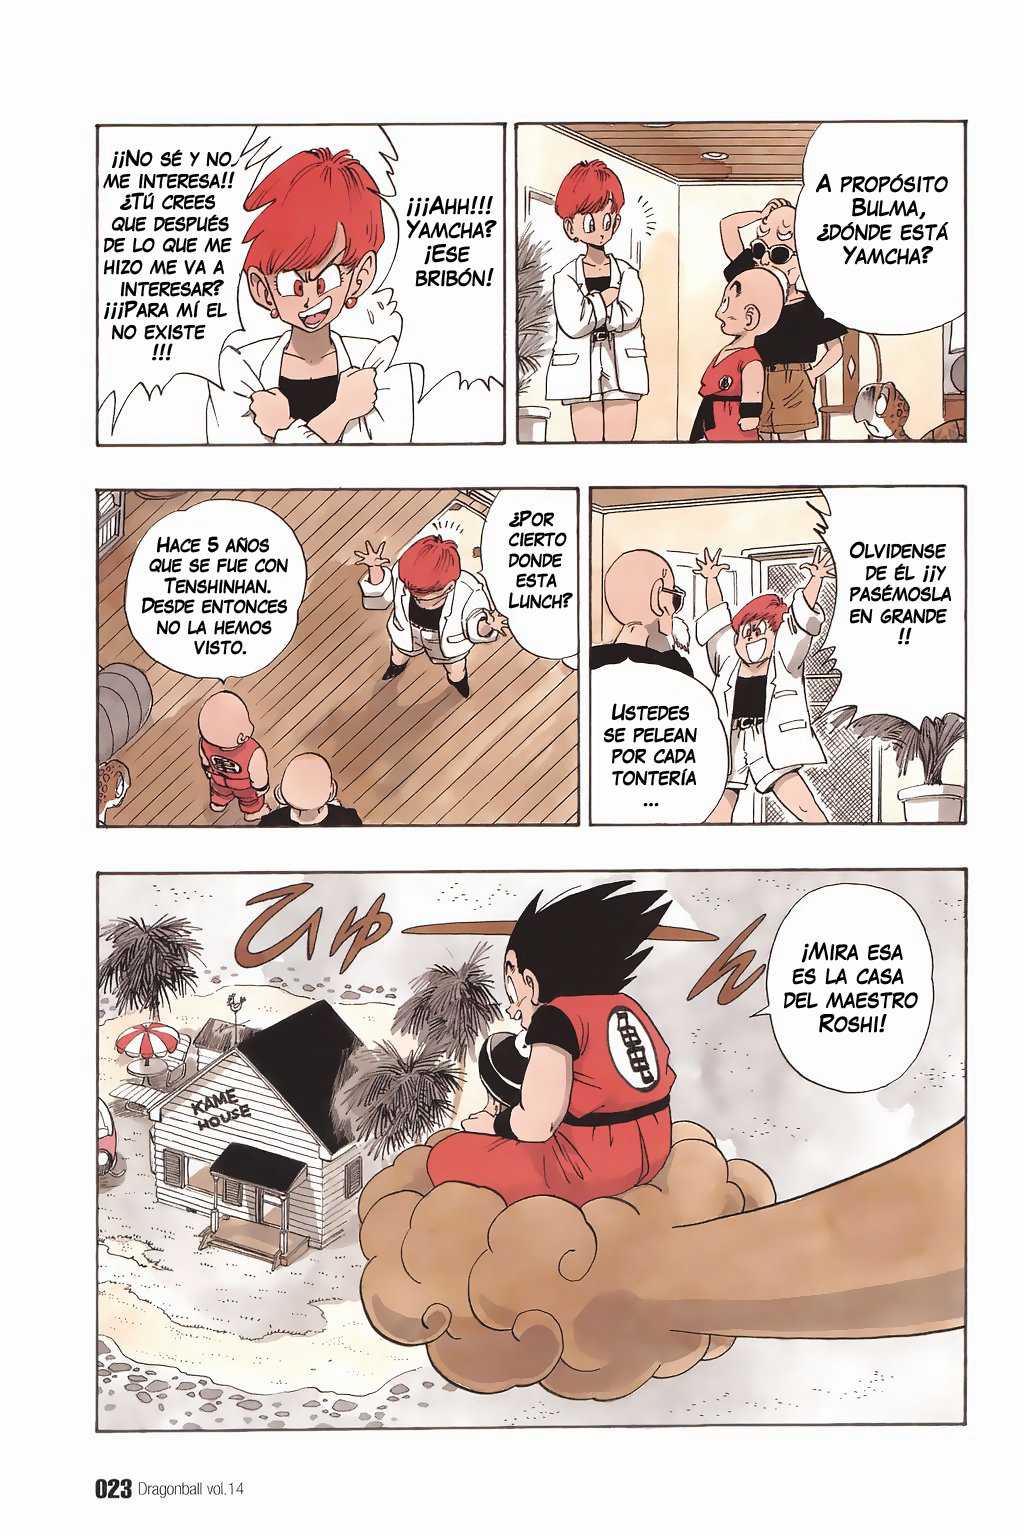 Dragon Ball Z Capítulo 196 [Manga] - Dragon Ball Z · Co...